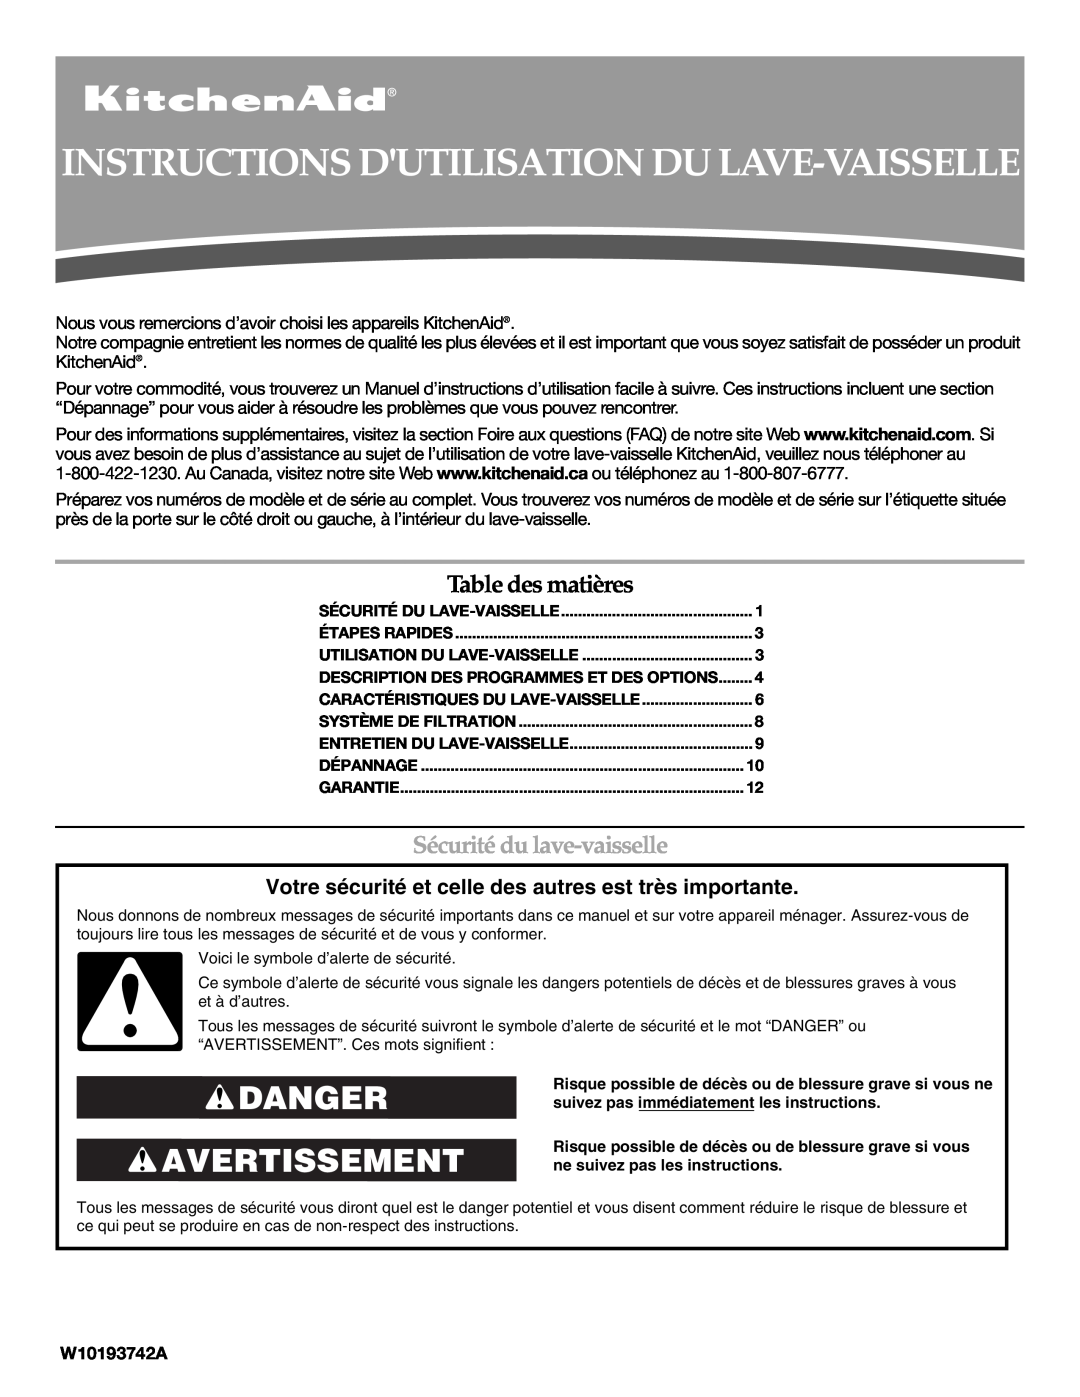 KitchenAid KUDE03FTSS Instructions Dutilisation Du Lave-Vaisselle, Danger Avertissement, Table des matières, W10193742A 